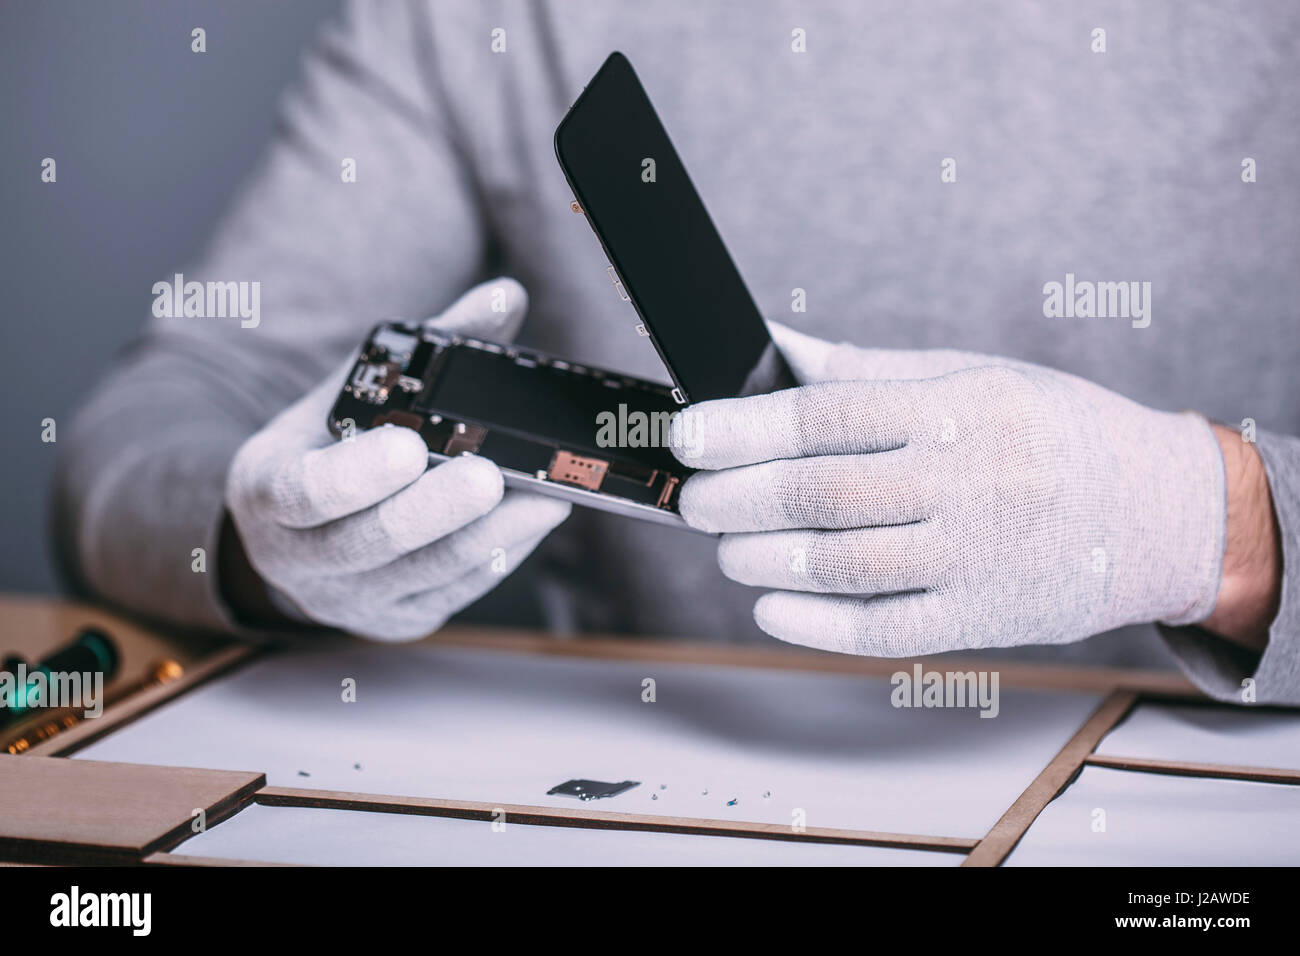 Portrait de jeune homme réparation technicien smart phone at electronics store Banque D'Images